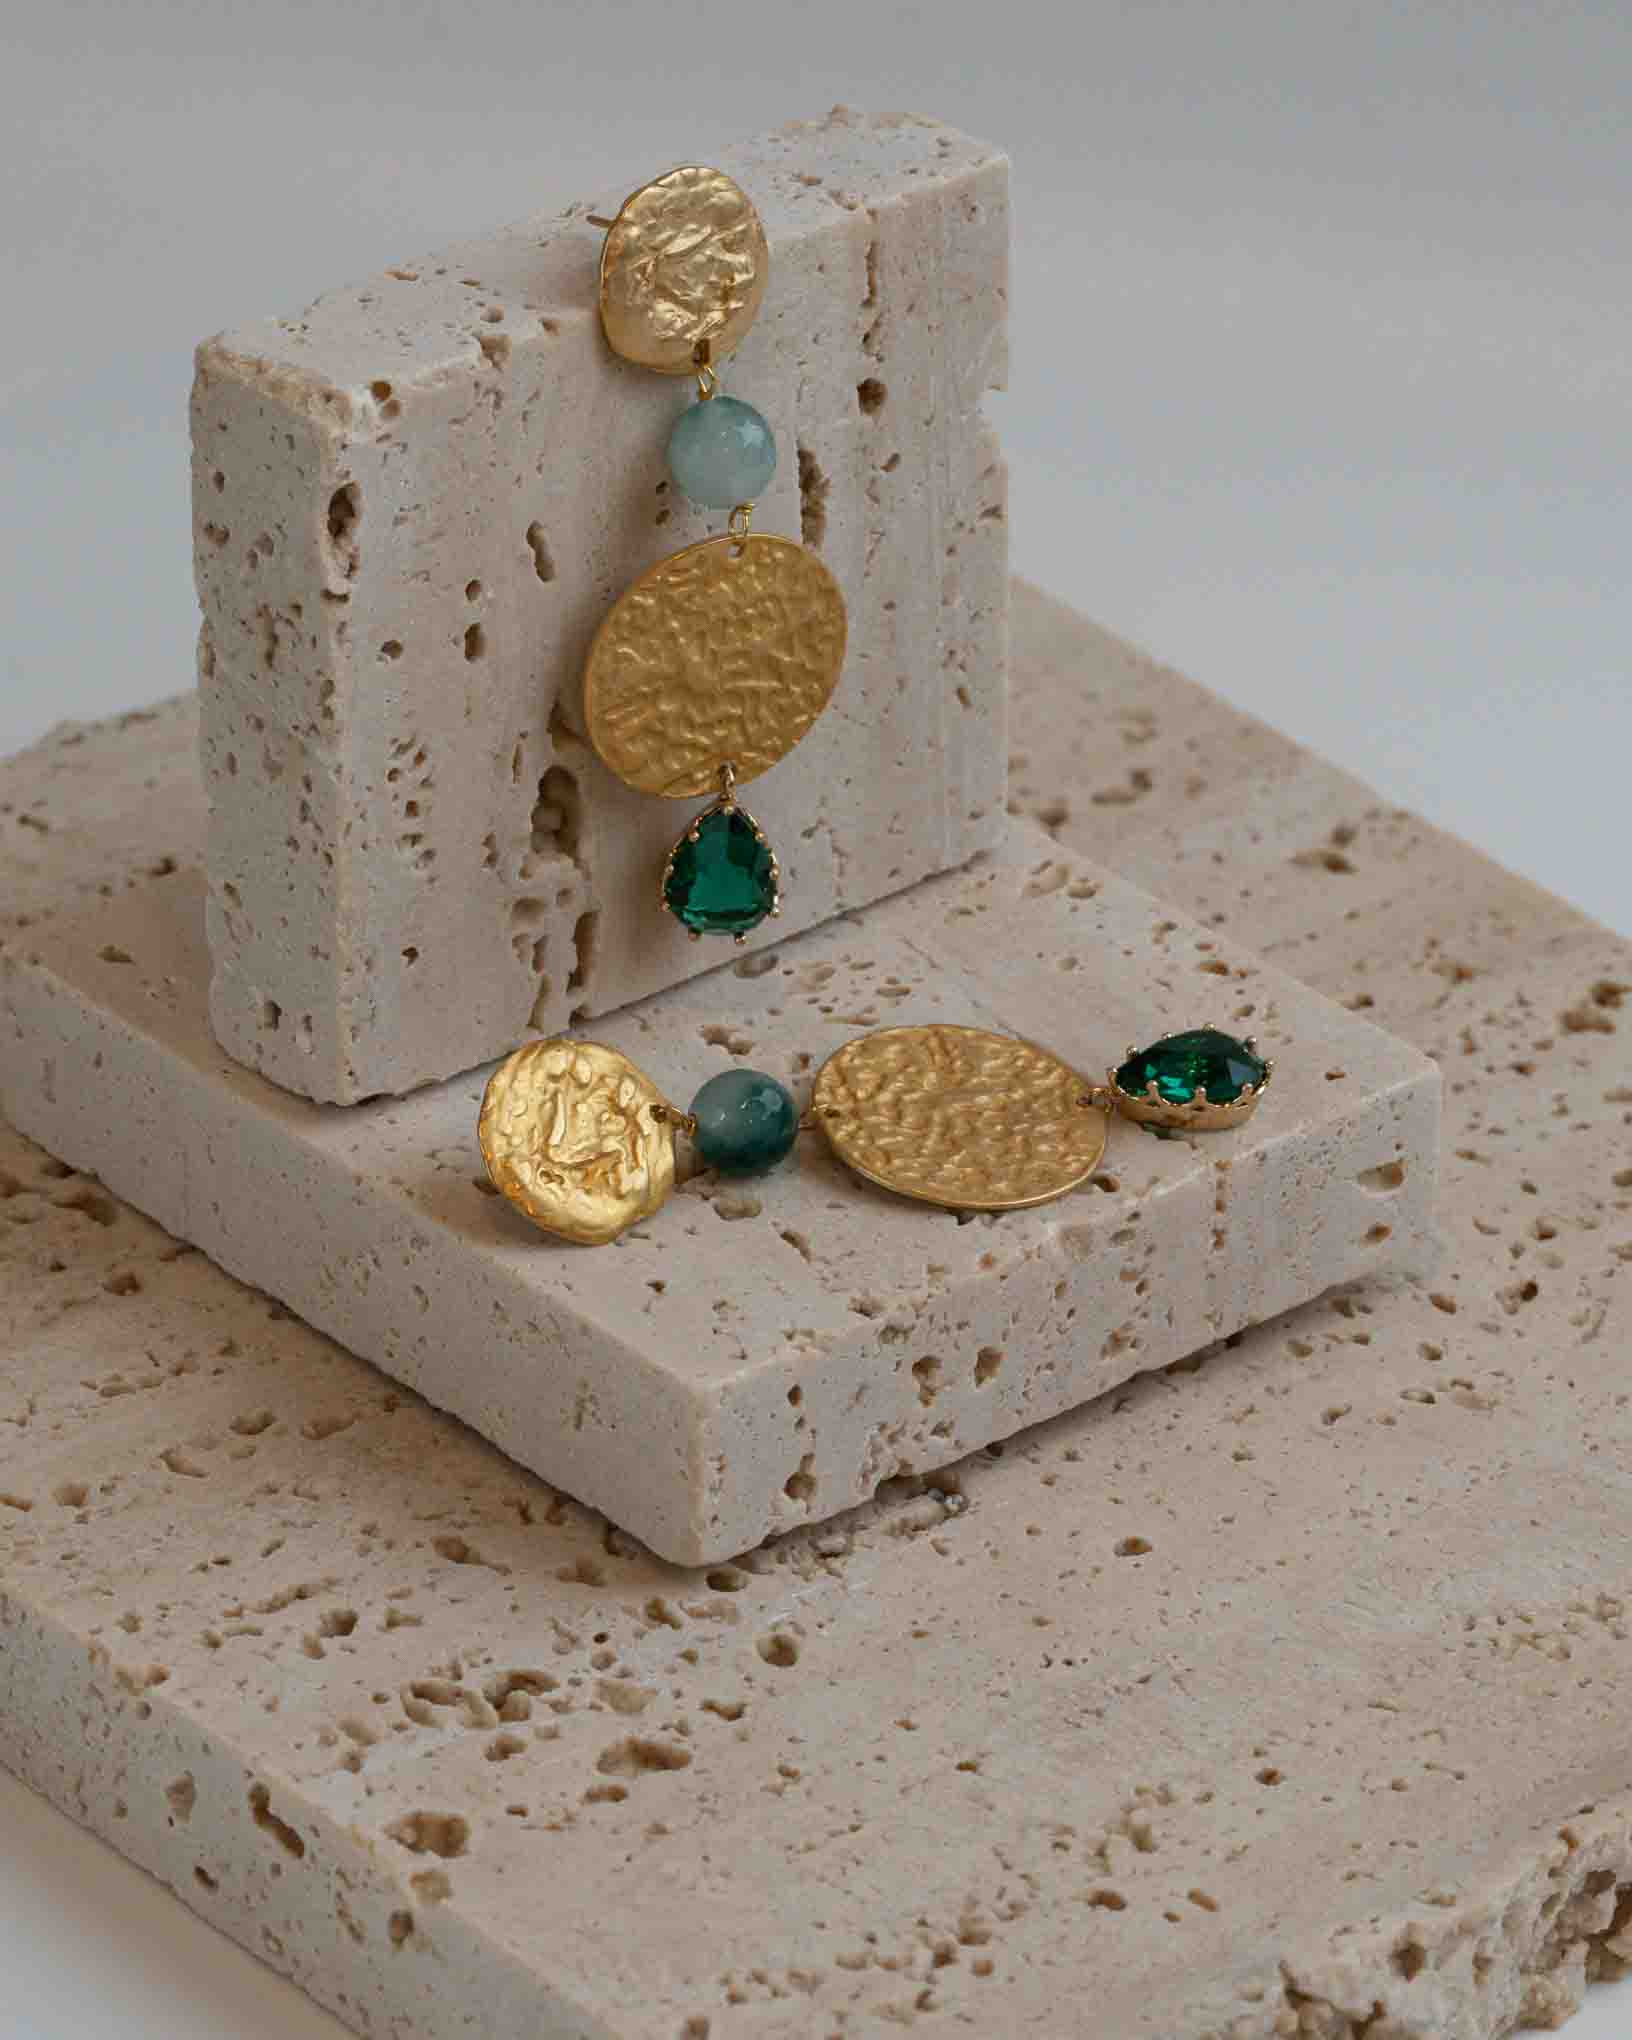 Ohrring Pesto alla Genovese aus der Kollektion I Classici von Donna Rachele Jewelry